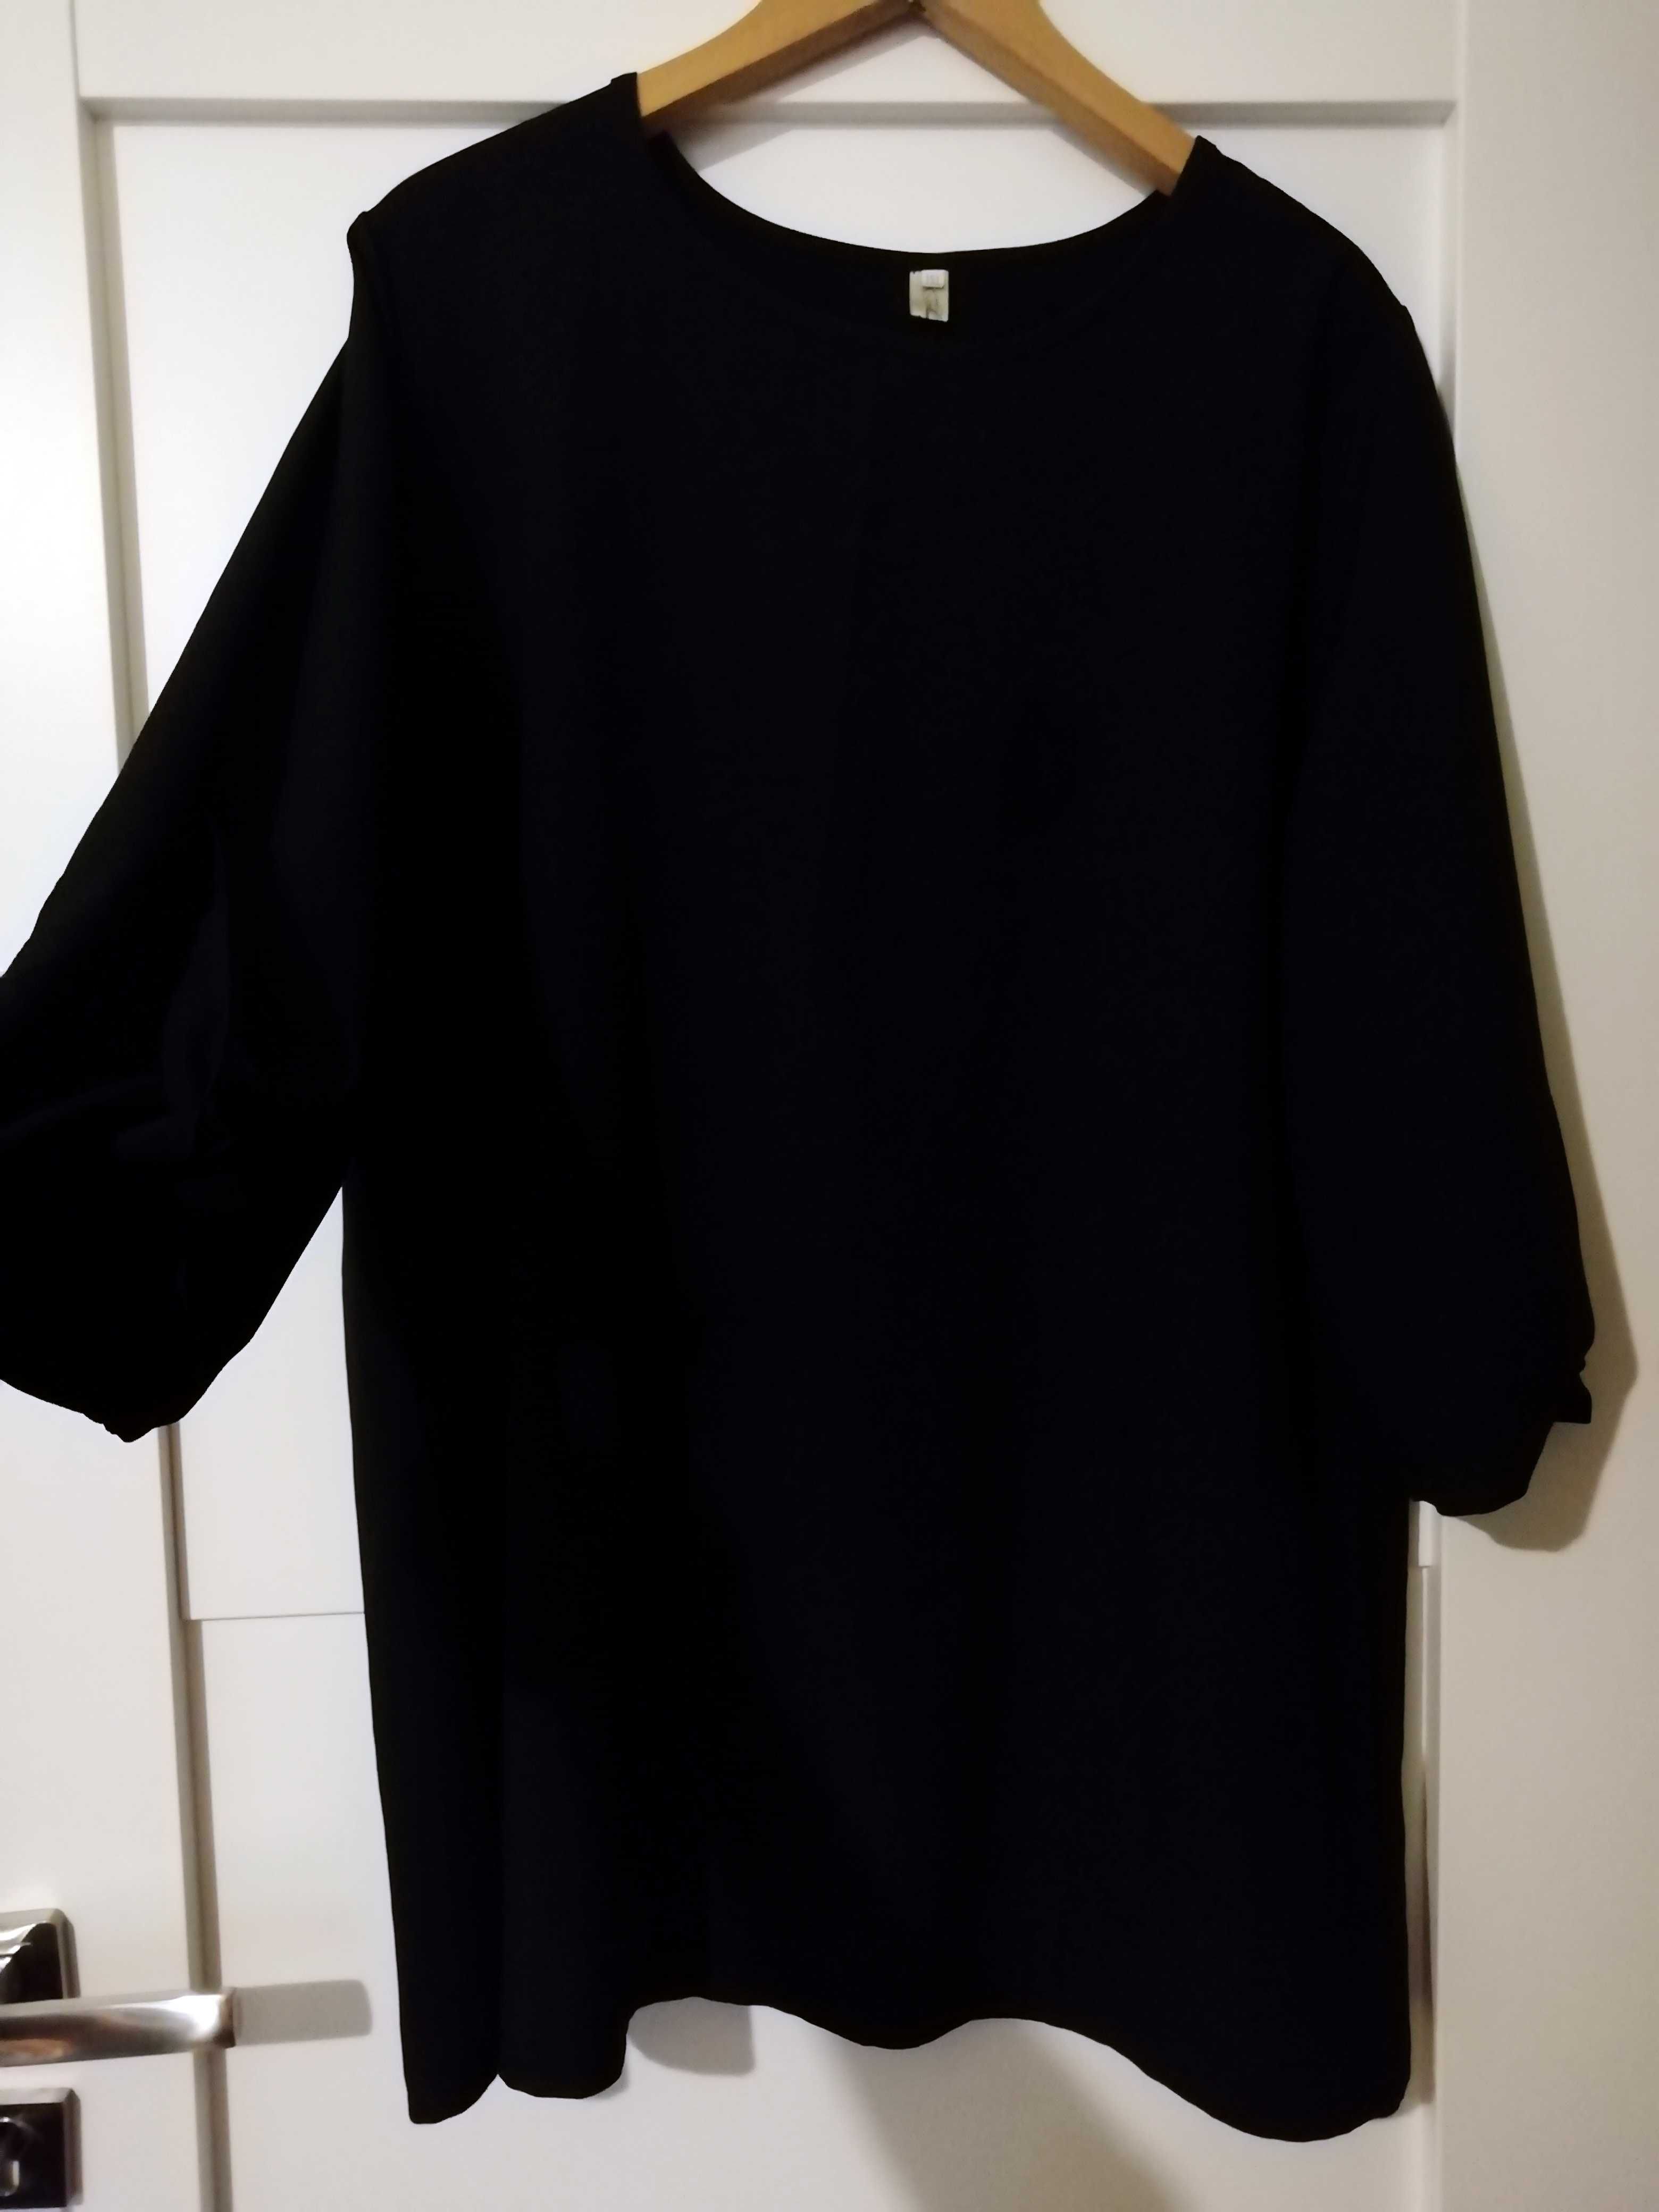 Eleganska sukienka Plus Size (mozliwa wymiana) XL